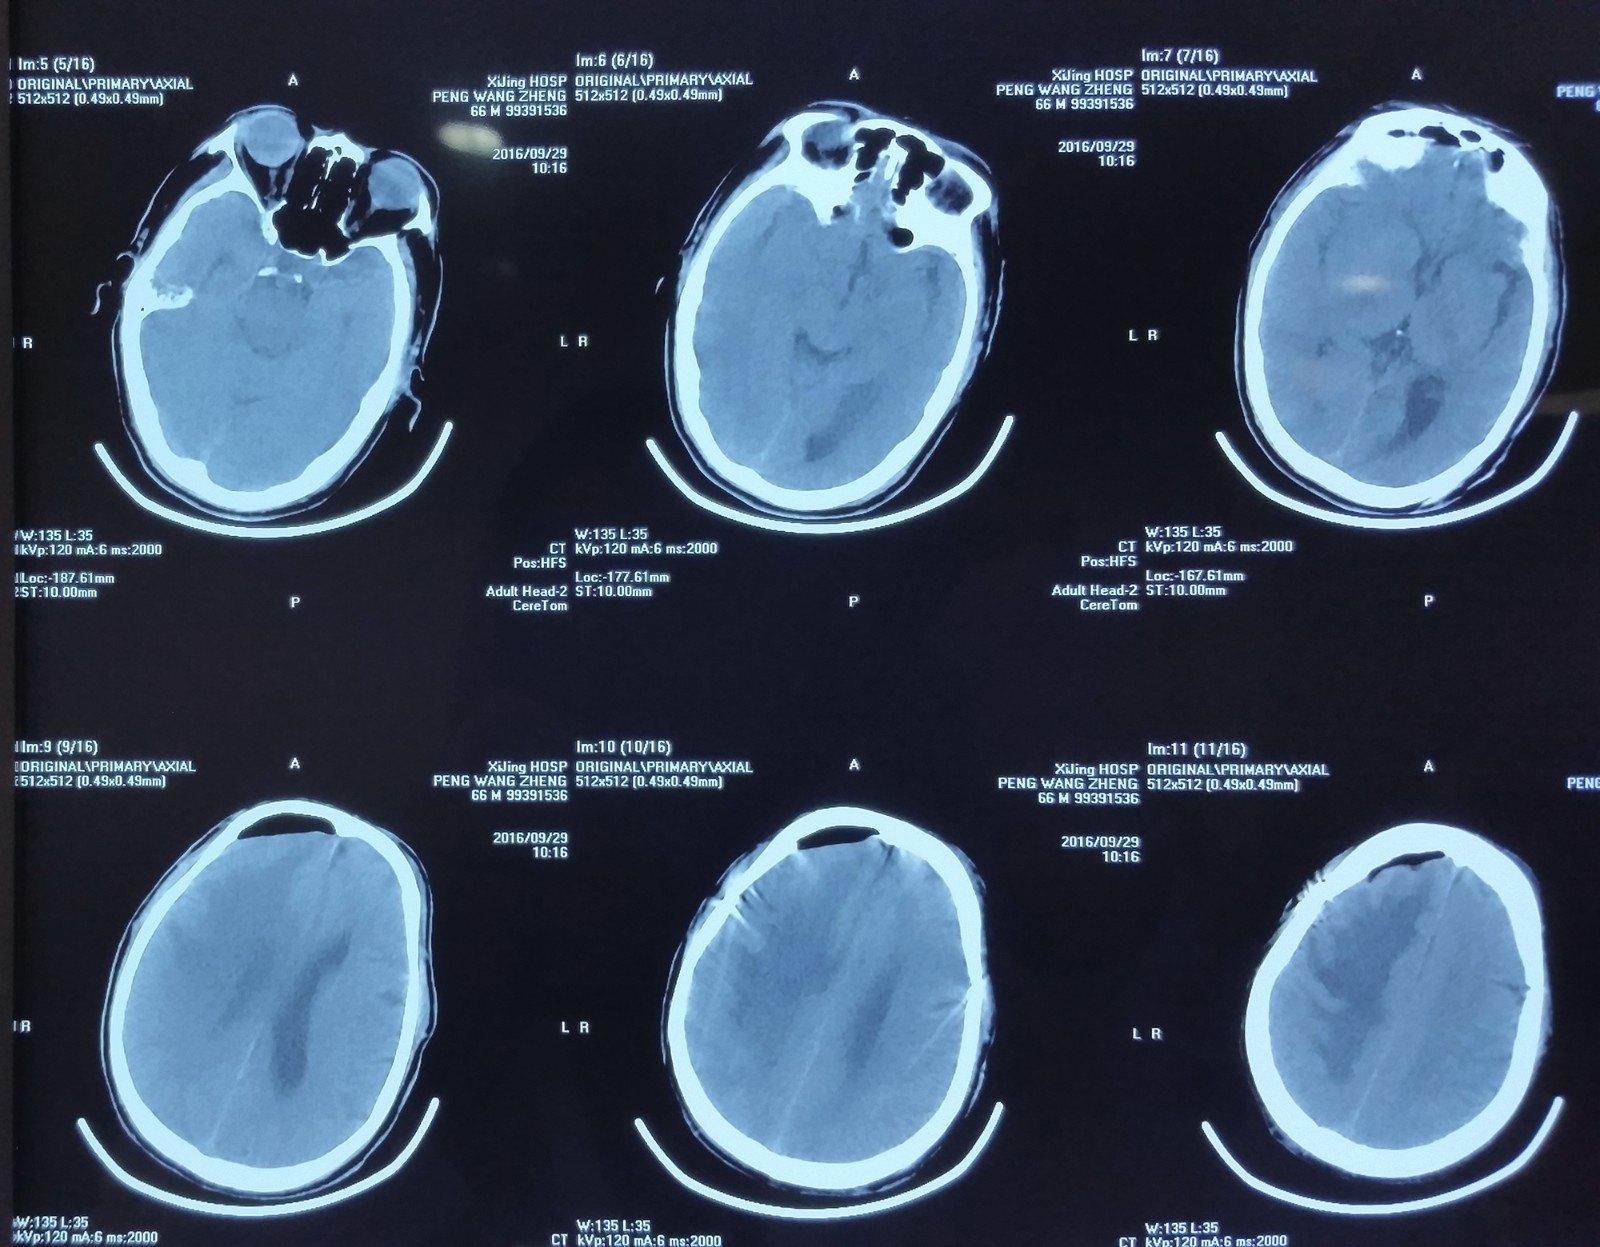 大脑胶质瘤病的影像学特征 | The Neurosurgical Atlas全文翻译 - 脑医汇 - 神外资讯 - 神介资讯